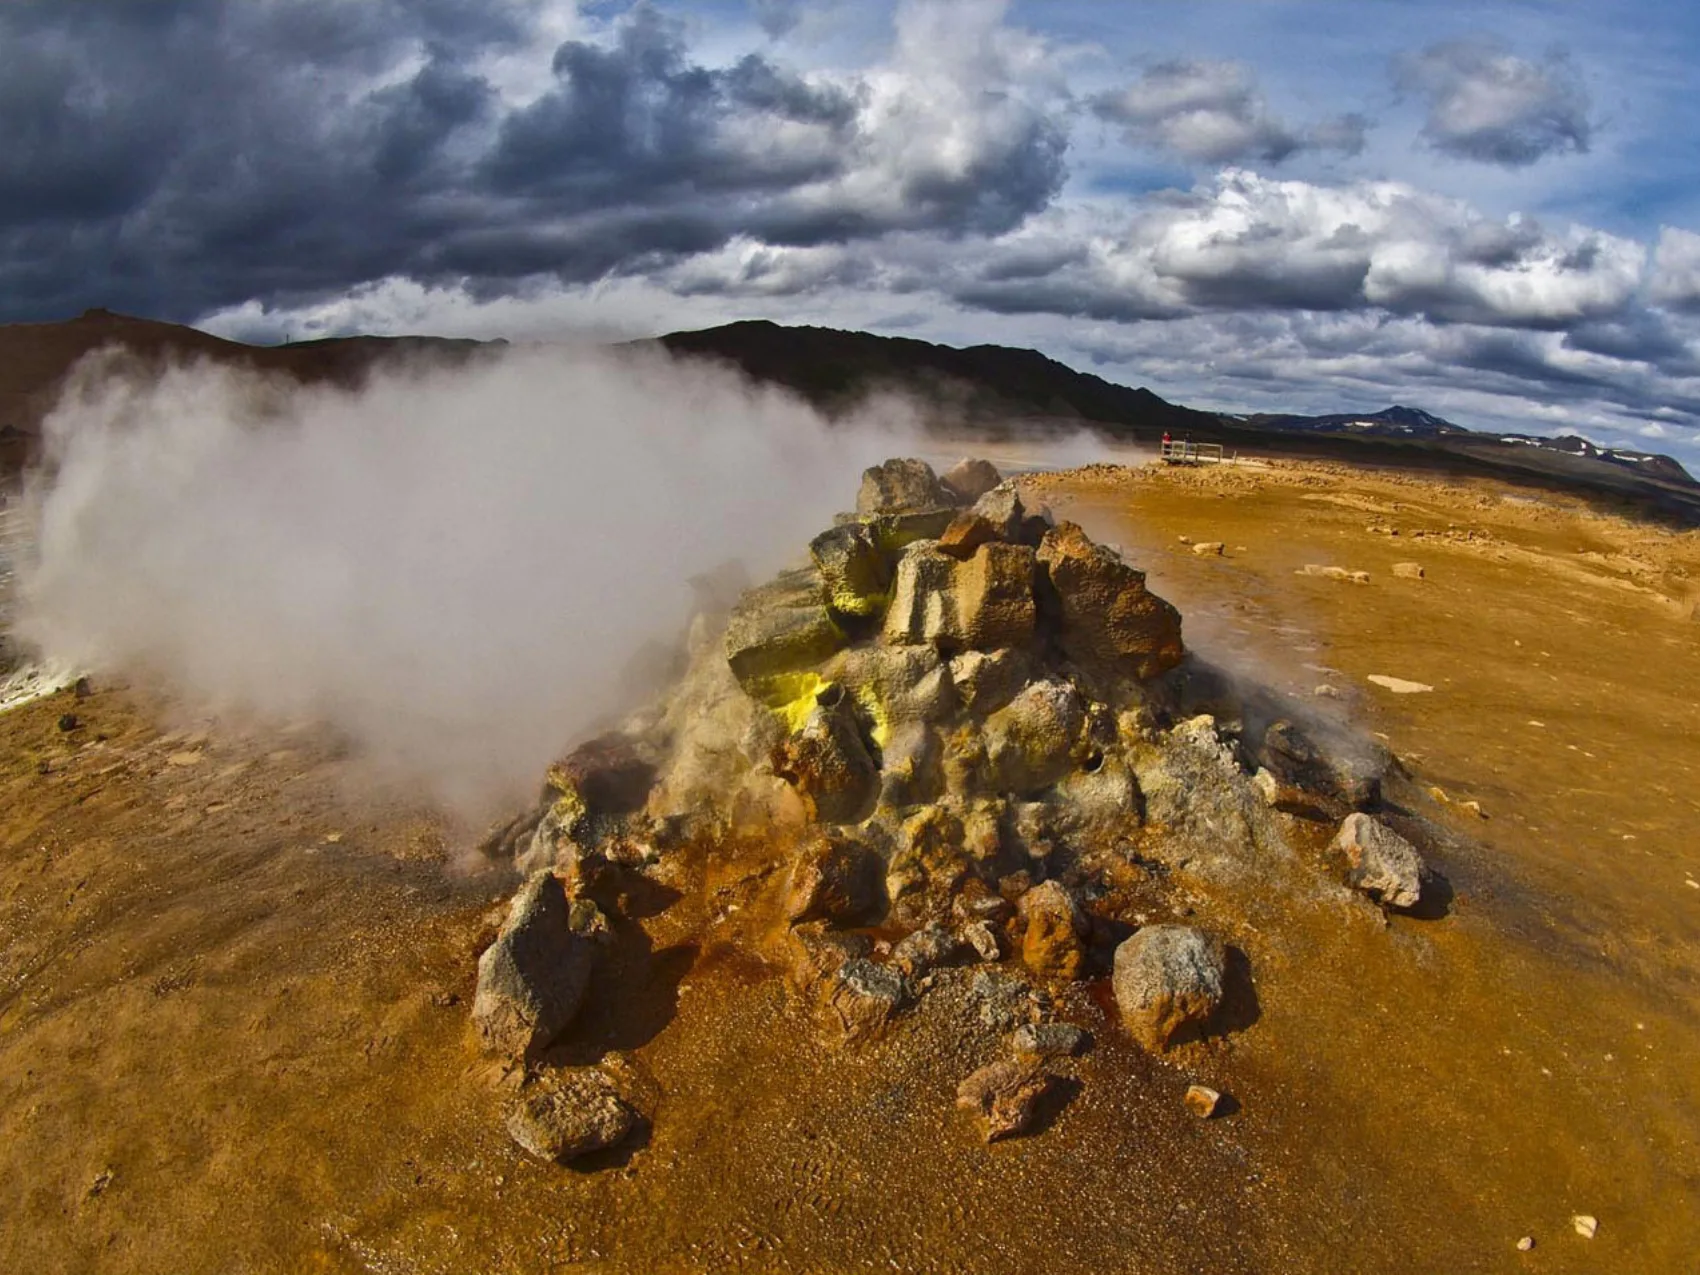 Hochtemperaturgebiet Hverarönd, Foto: Kurt Schneider
zeigt einen Steinhaufen, aus dem Dampf und Schwefel austreten, der Boden ist rot-gelb gefärbt. Im Hintergrund Wolken und Berge.